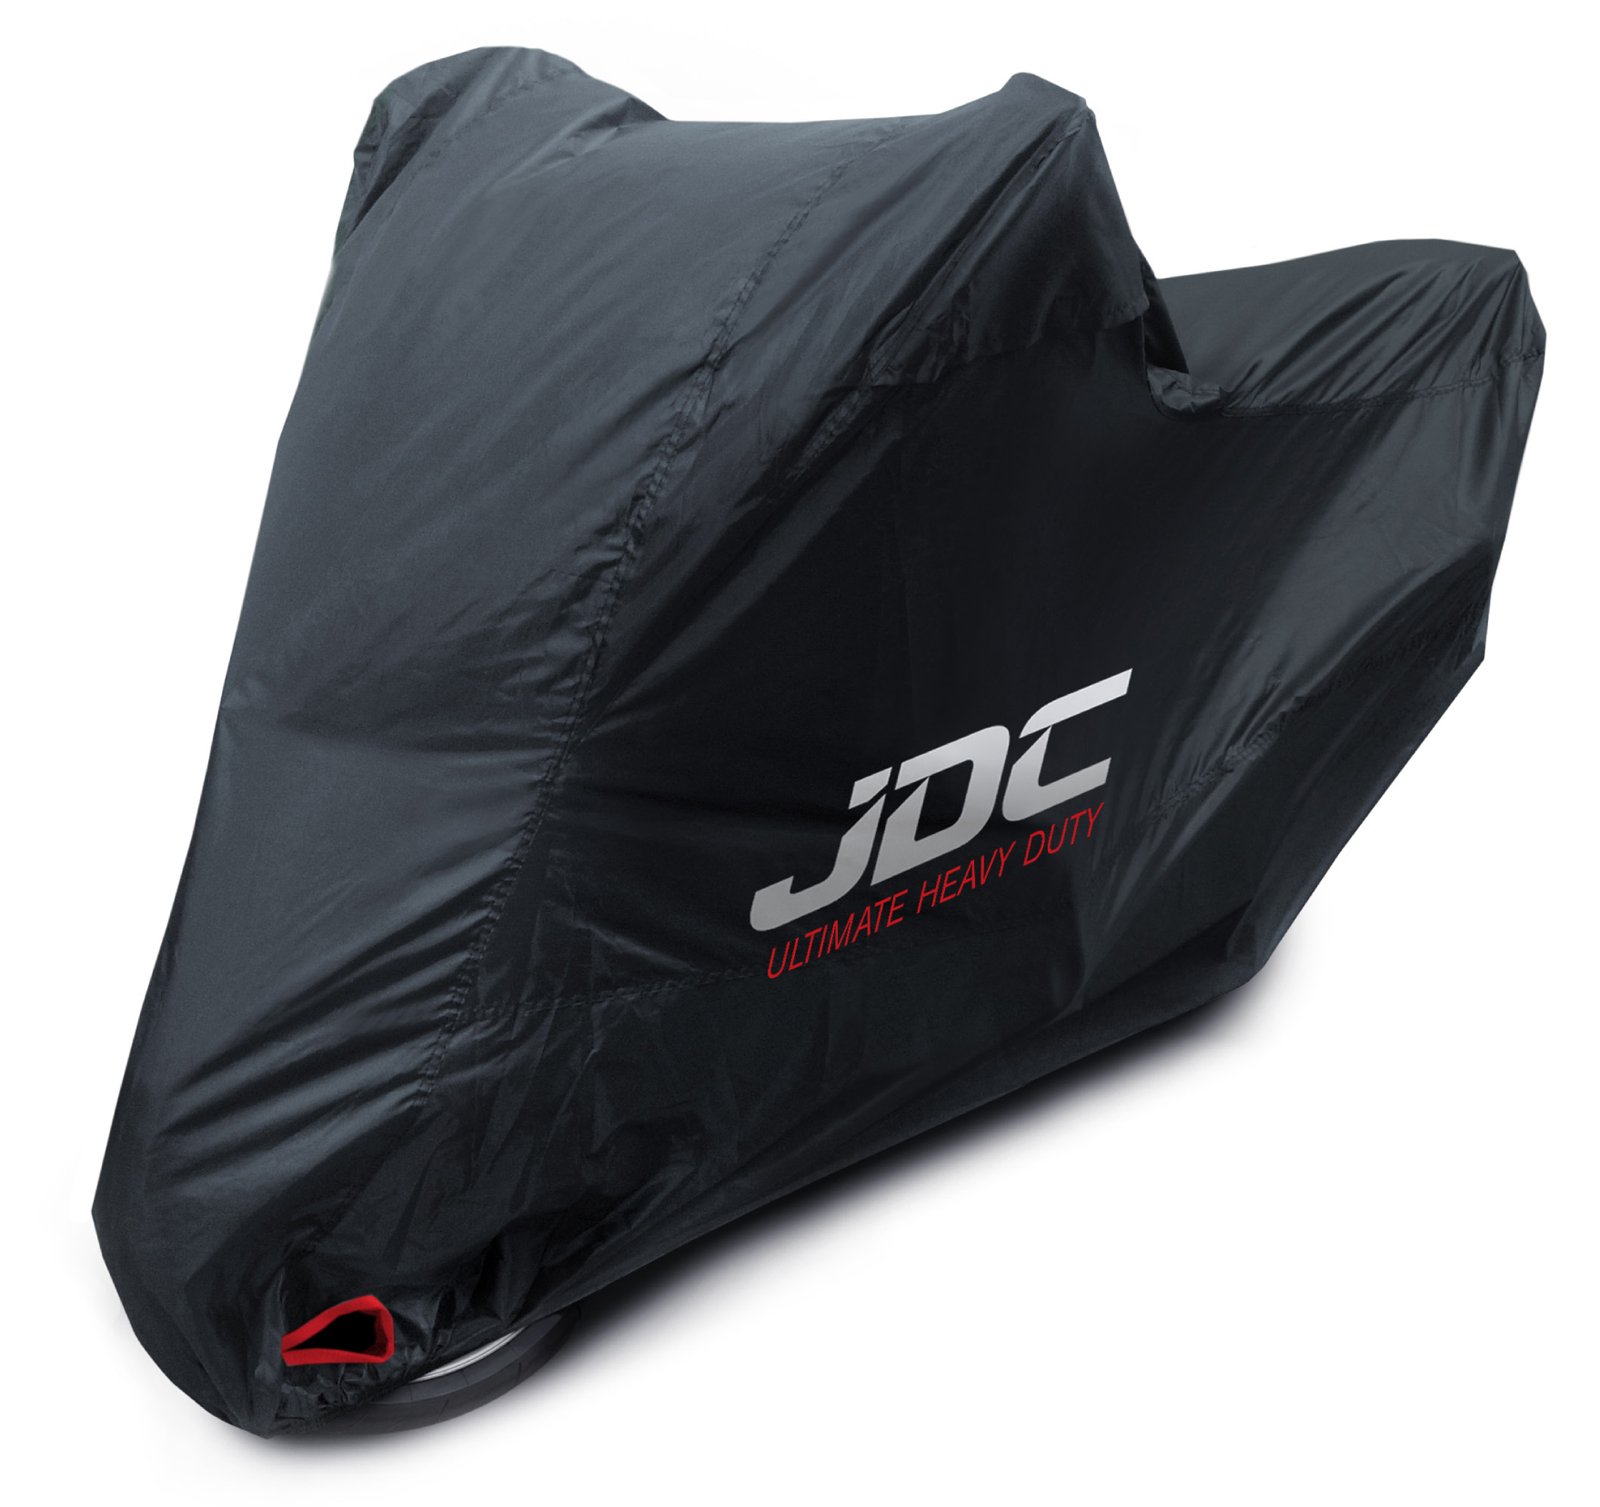 JDC 100% wasserdichte Motorradabdeckung - Ultimate Heavy Duty (Extra strapazierfähig, weiches Futter, hitzebeständig, verschweißte Nähte) - M von JDC